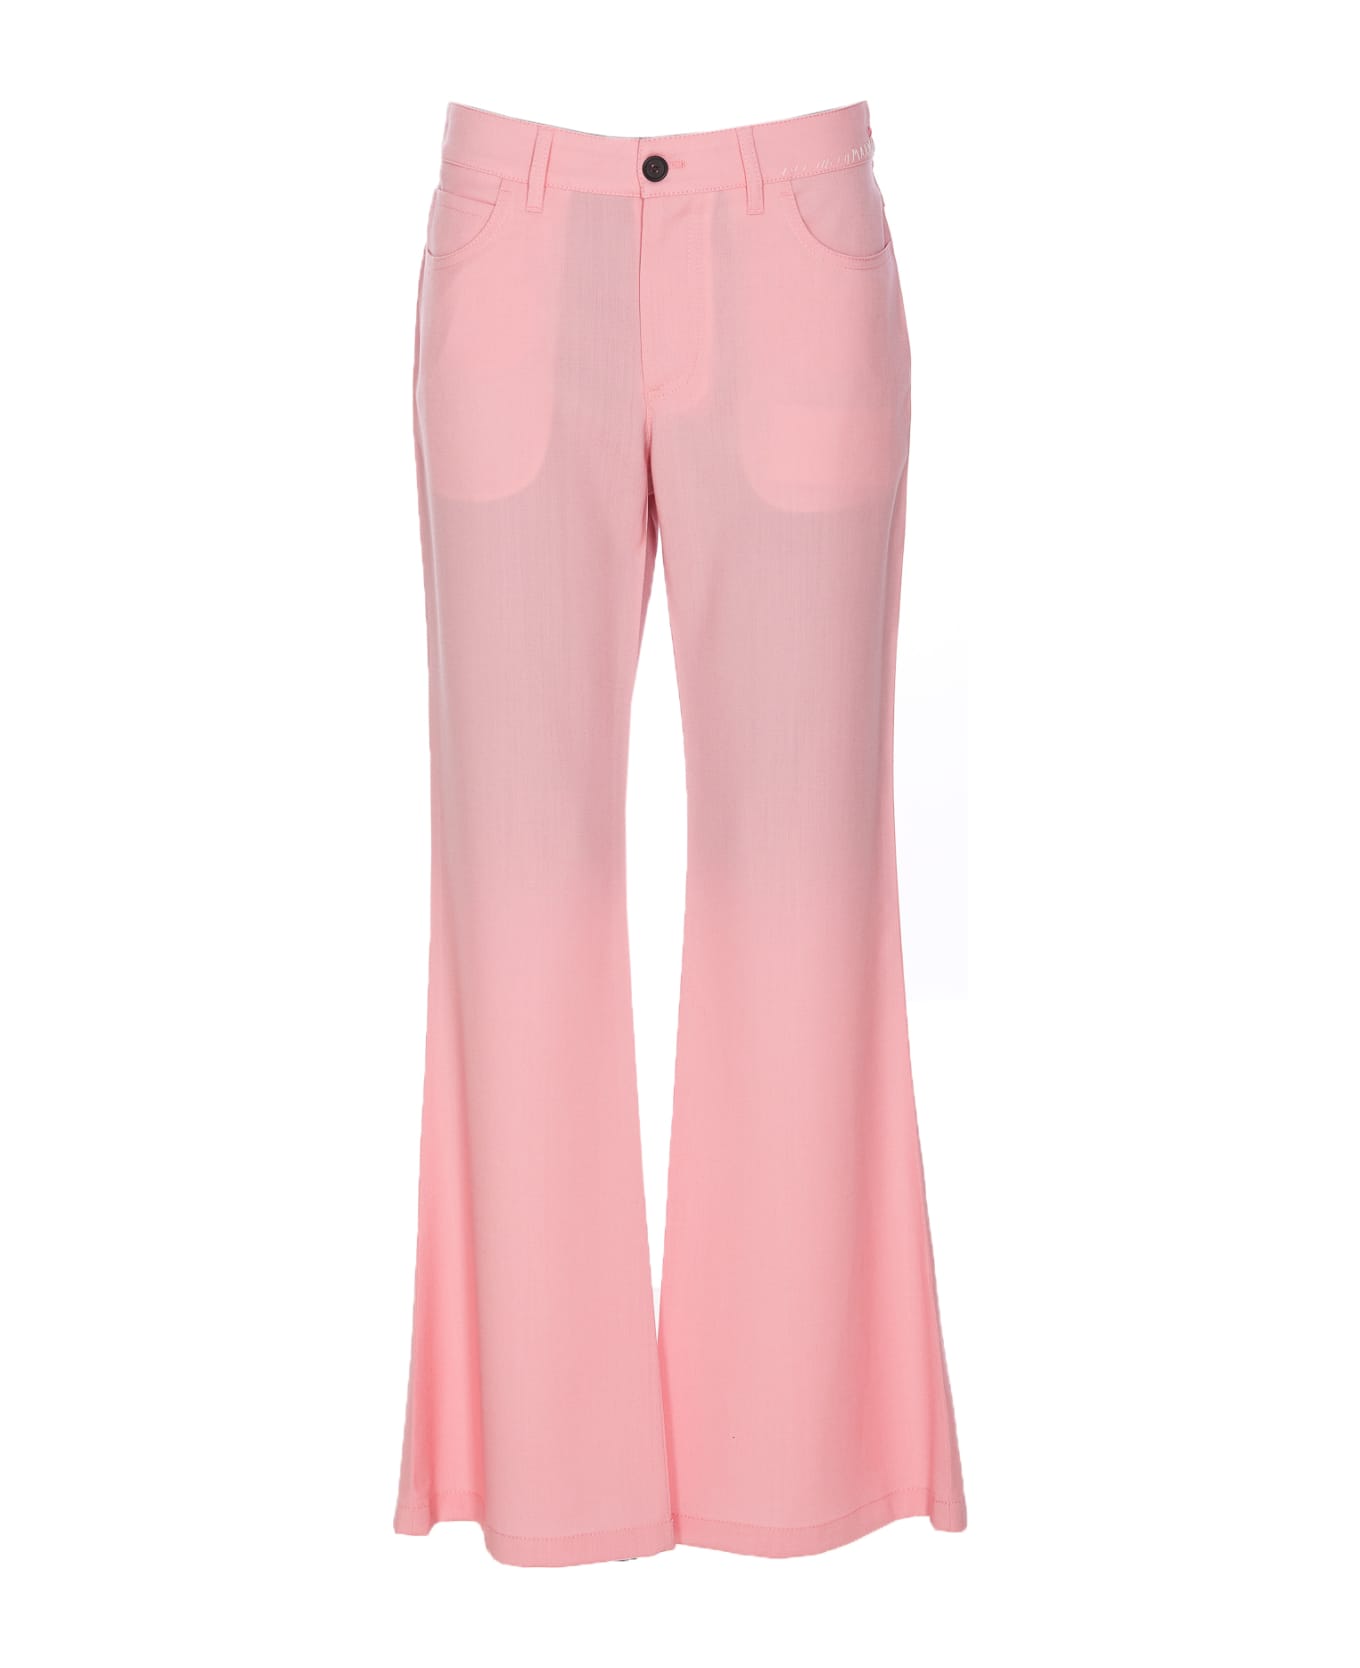 Marni Flared Pants - Pink ボトムス